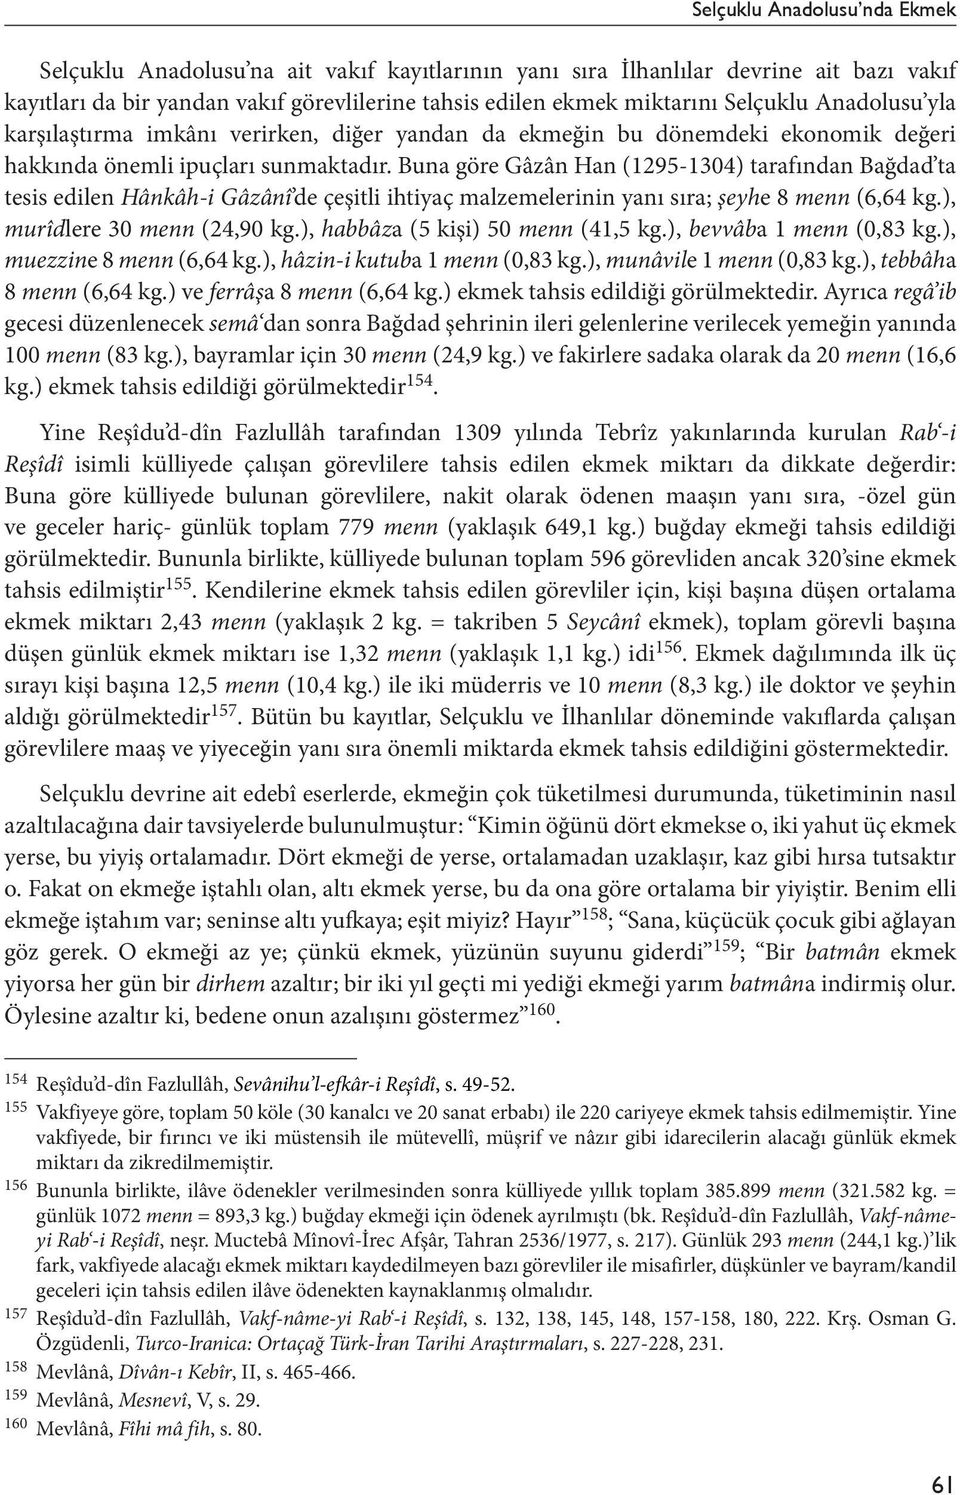 Buna göre Gâzân Han (12951304) tarafından Bağdad ta tesis edilen Hânkâhi Gâzânî de çeşitli ihtiyaç malzemelerinin yanı sıra; şeyhe 8 menn (6,64 kg.), murîdlere 30 menn (24,90 kg.